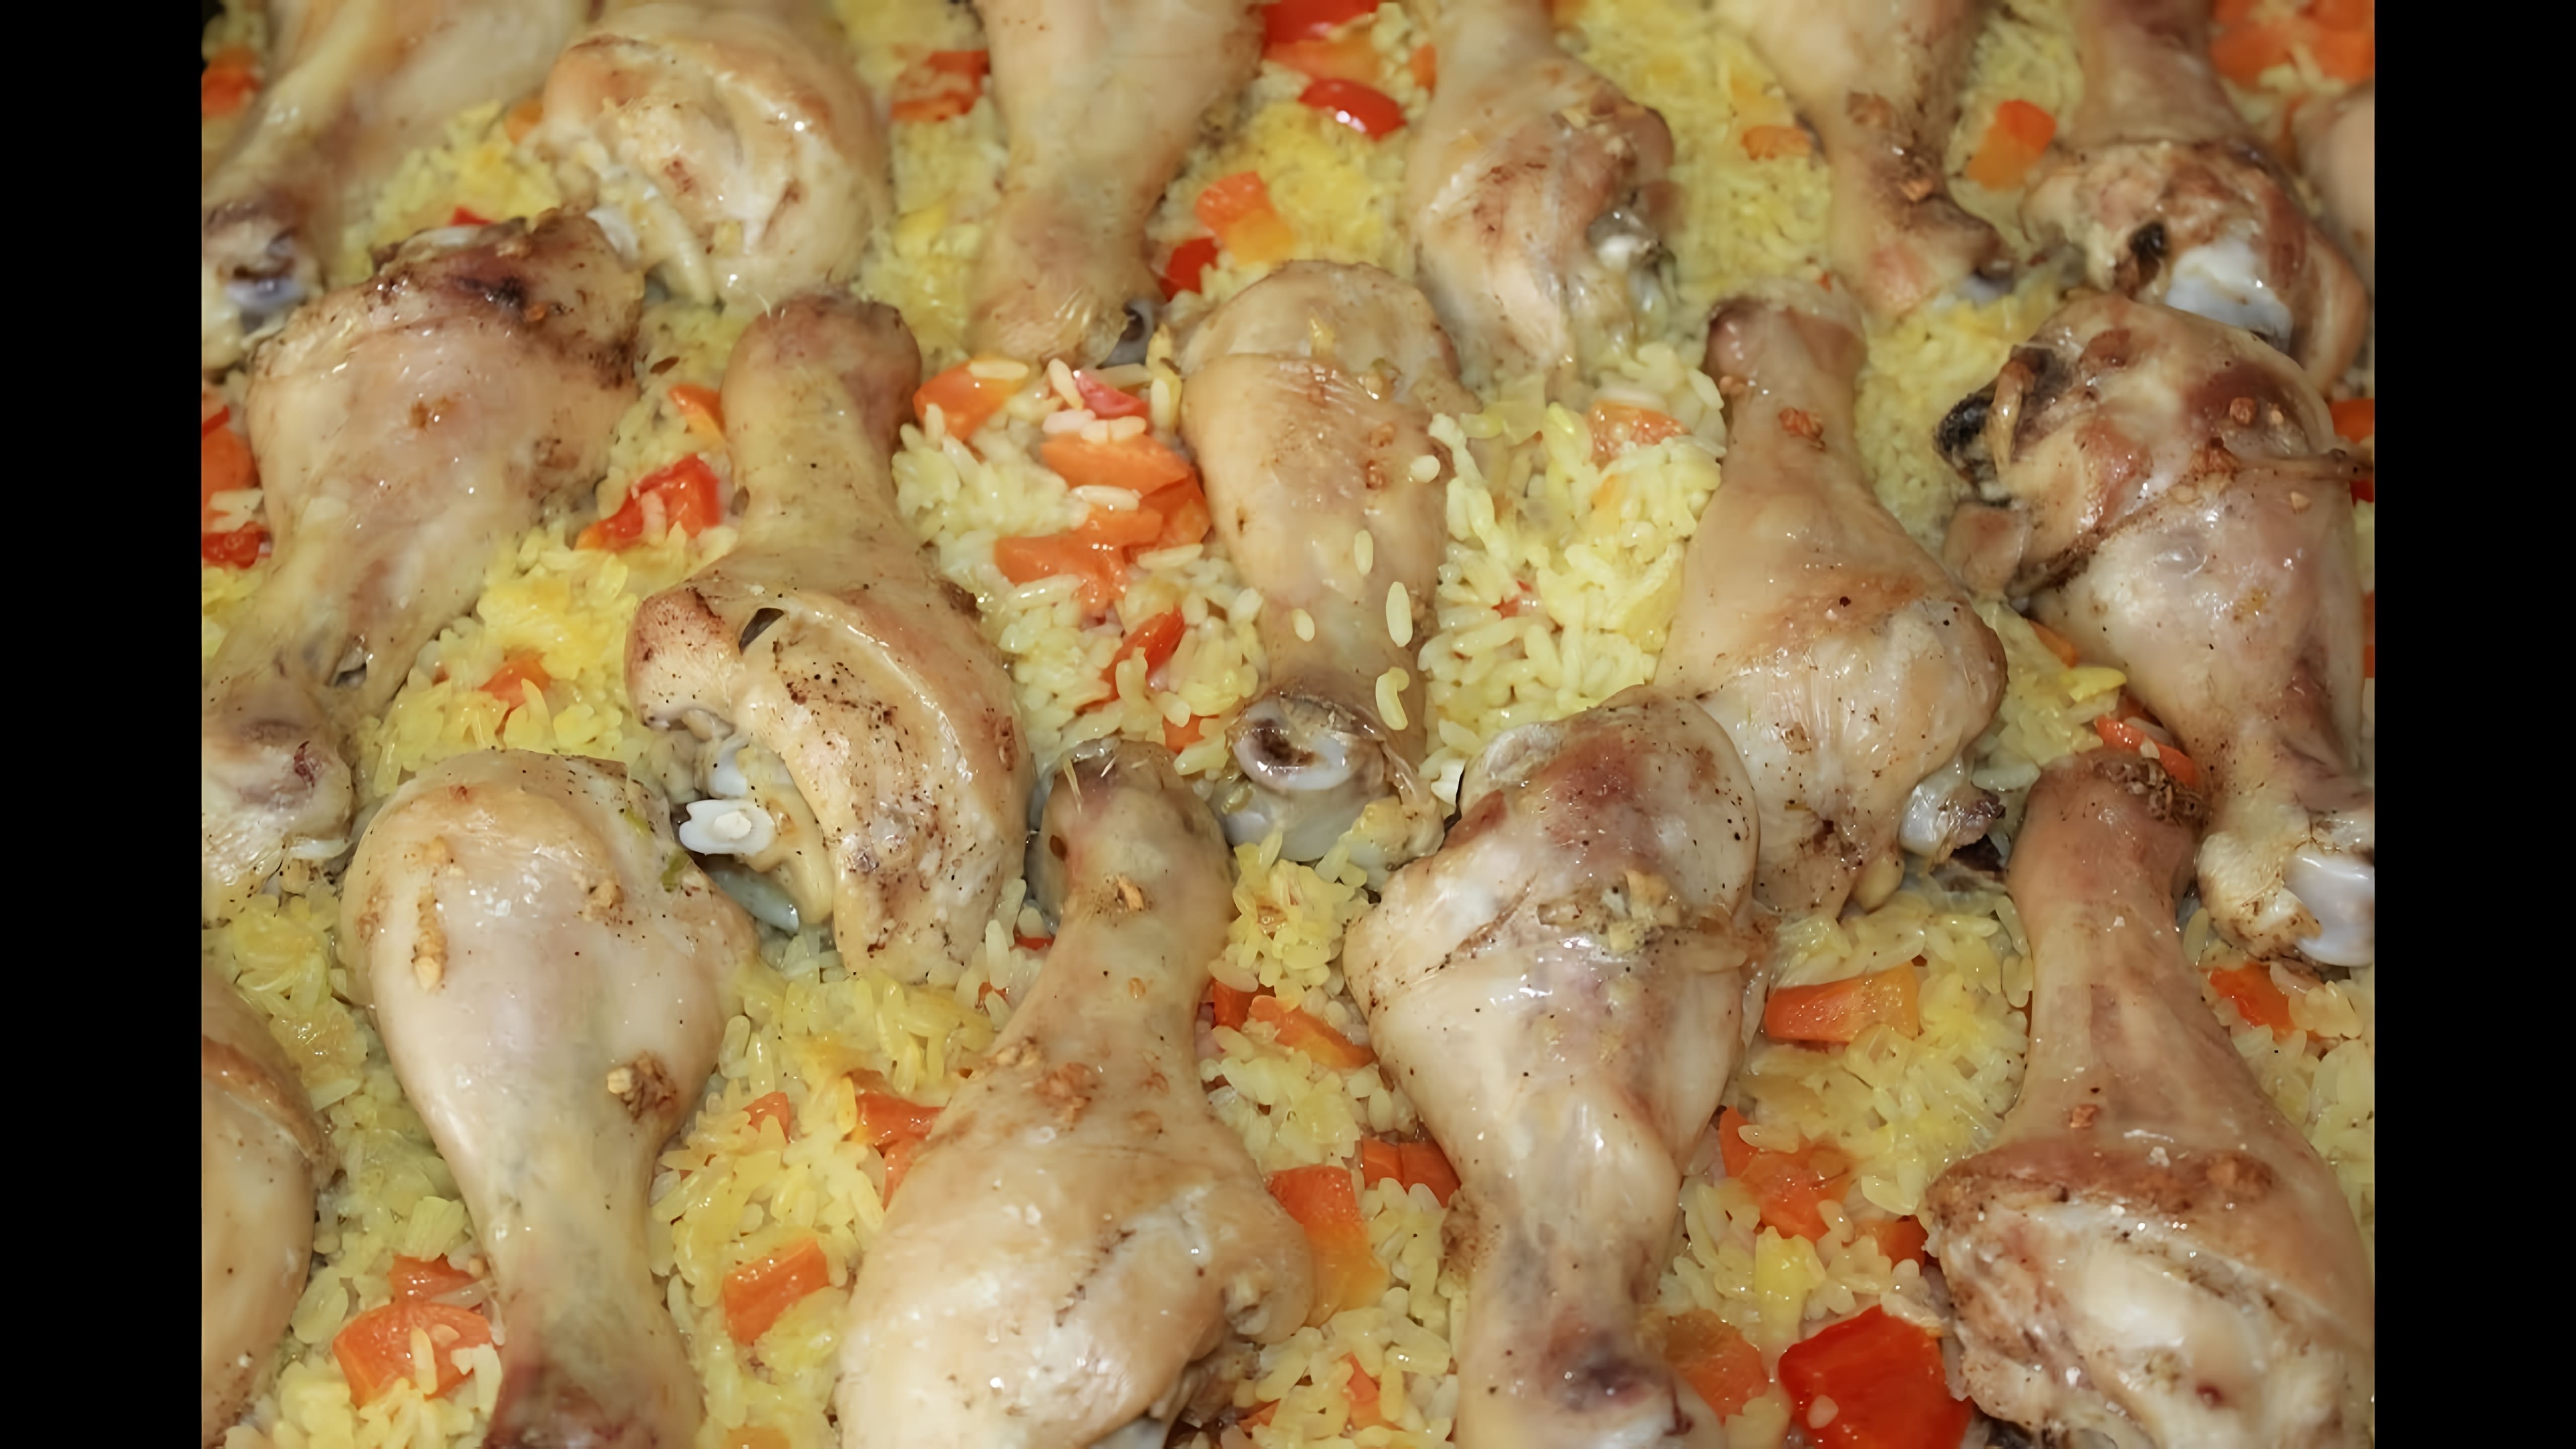 В этом видео демонстрируется процесс приготовления вкусного и сытного обеда для всей семьи - куриных ножек с рисом и овощами, запеченных в духовке